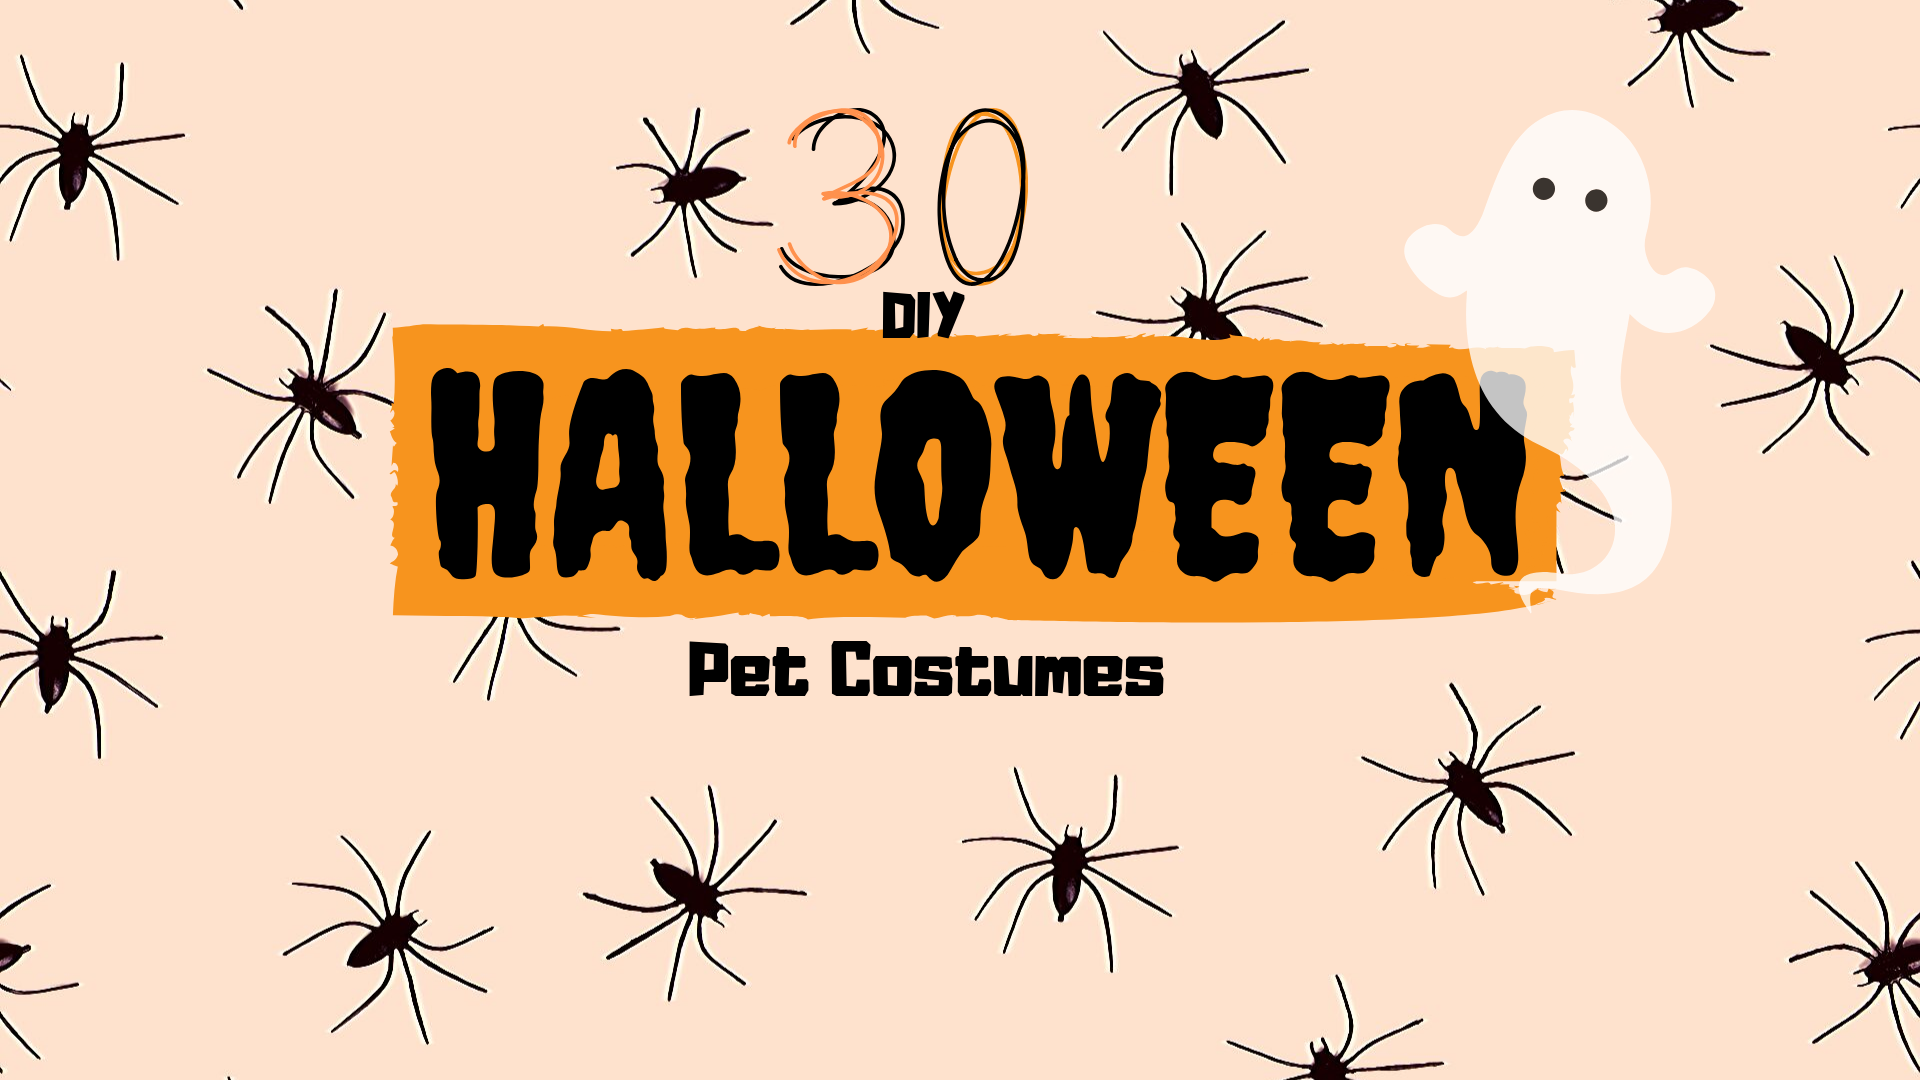 30 DIY Halloween Pet Costumes